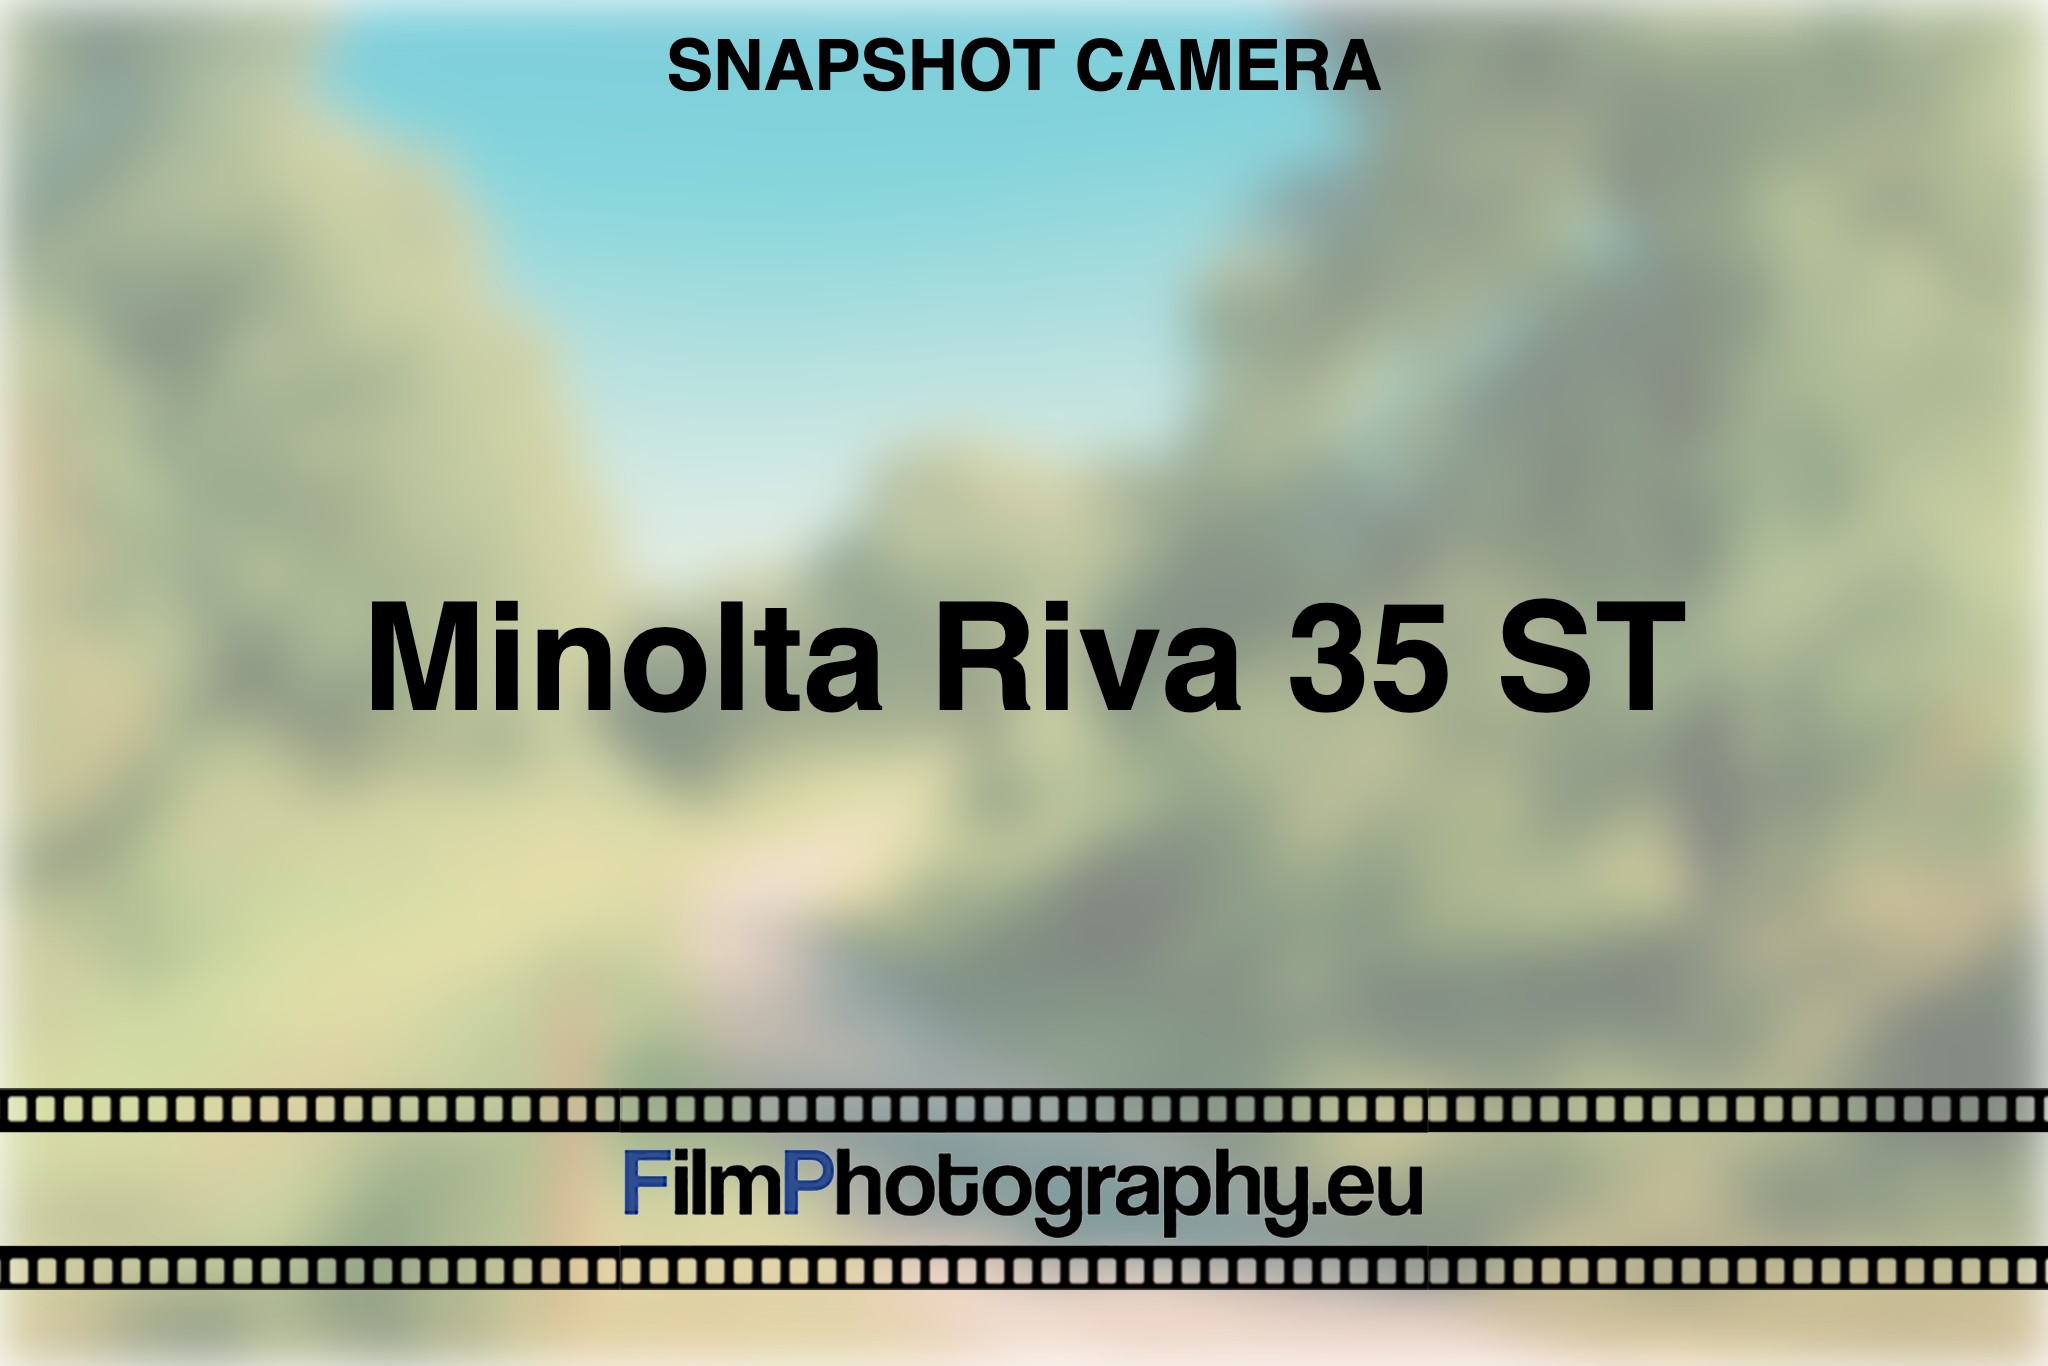 minolta-riva-35-st-snapshot-camera-bnv